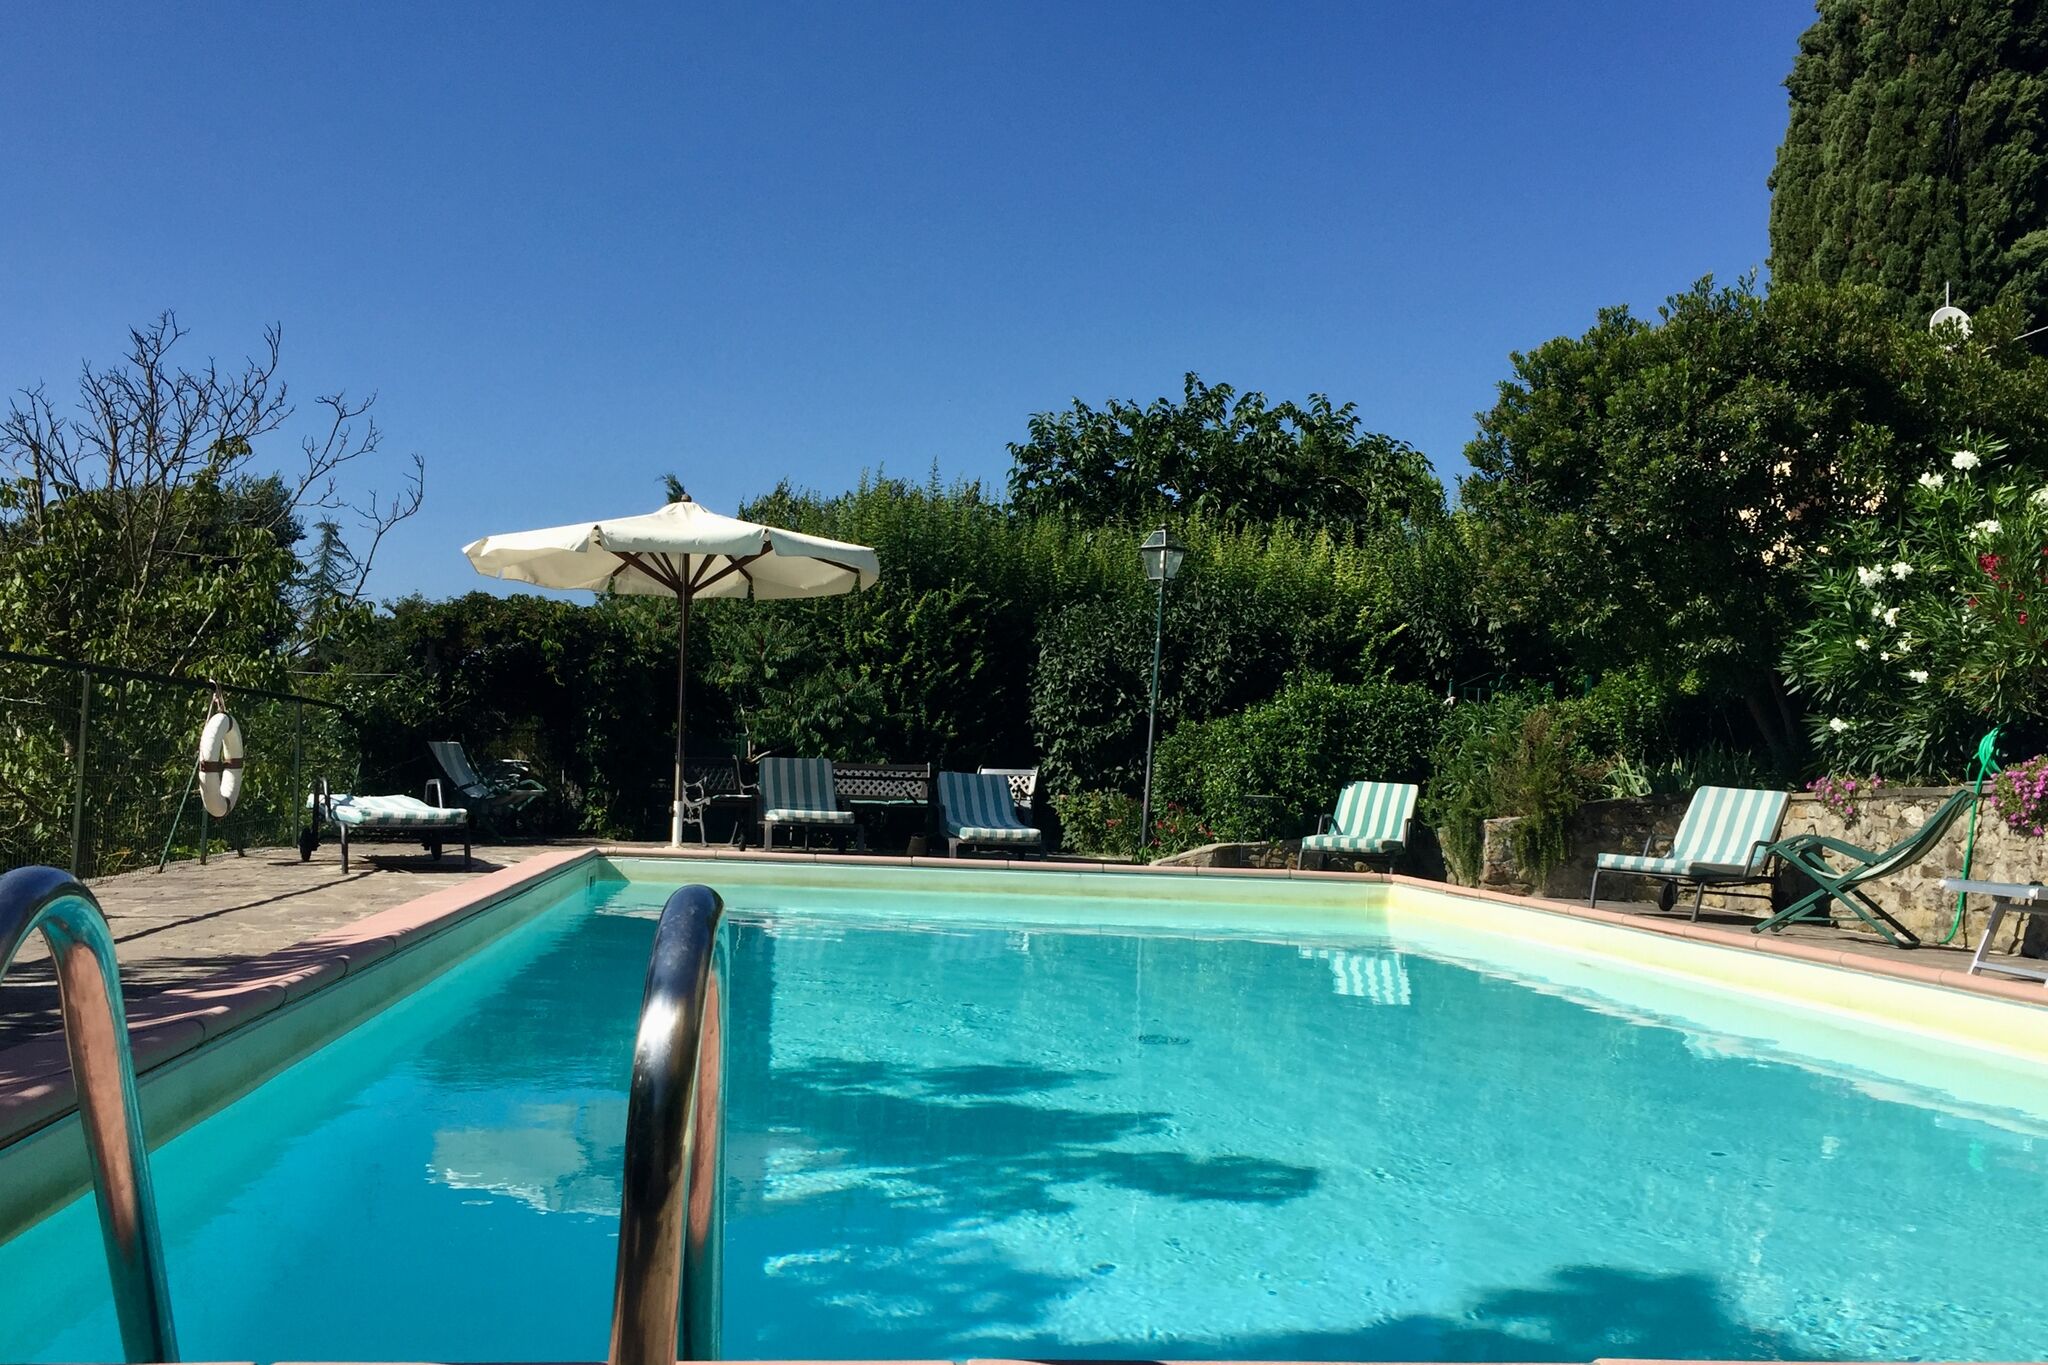 Vrijstaand vakantiehuis in Toscane met zwembad